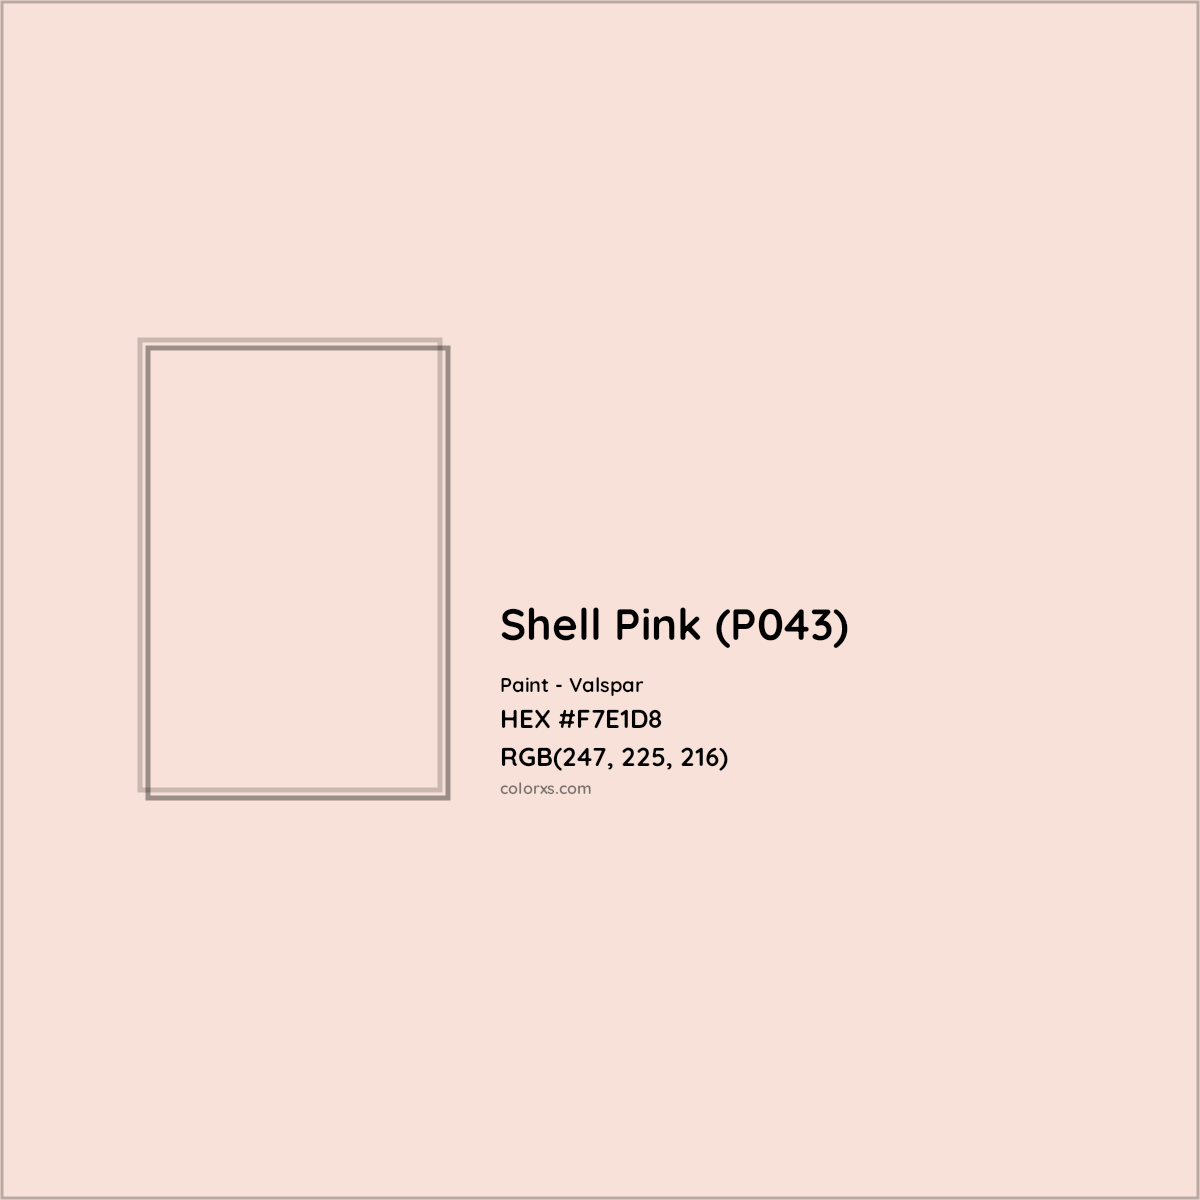 HEX #F7E1D8 Shell Pink (P043) Paint Valspar - Color Code